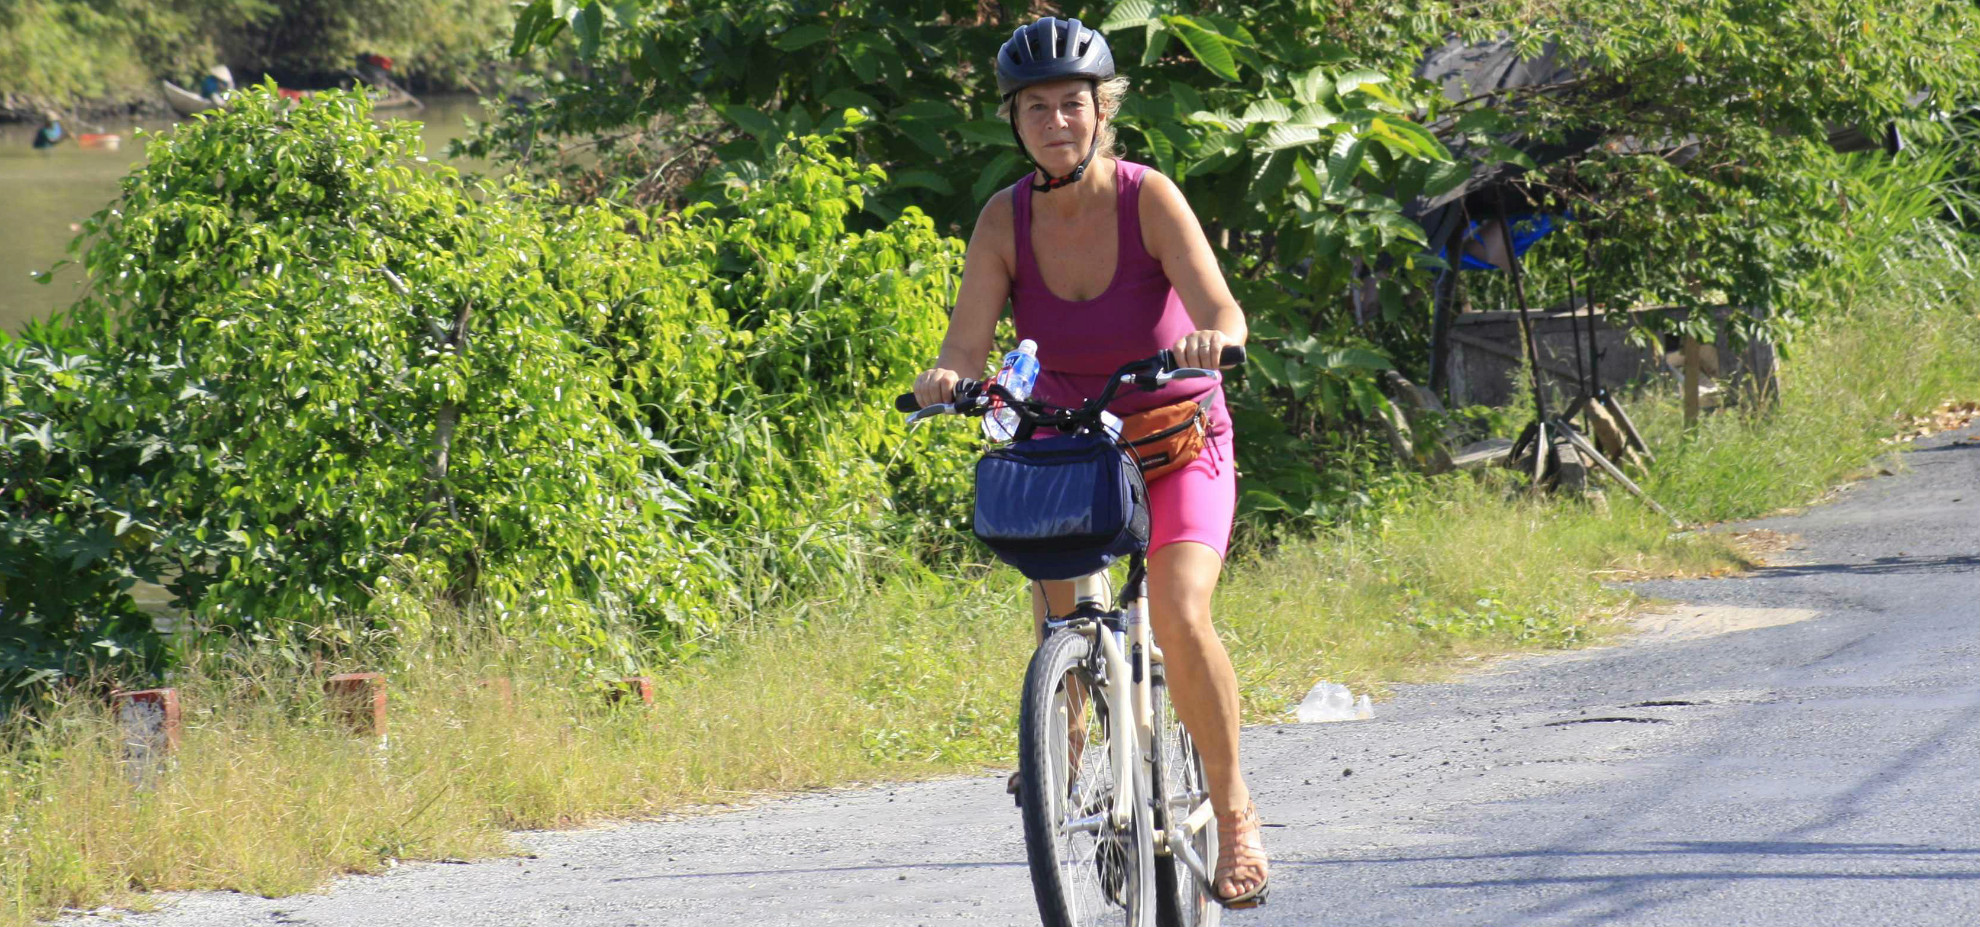 Diane a participé au projet «Raid à vélo» pour l’association Mekong Plus. 462 km à « vélo engagé » au cœur du Vietnam, une expérience unique!